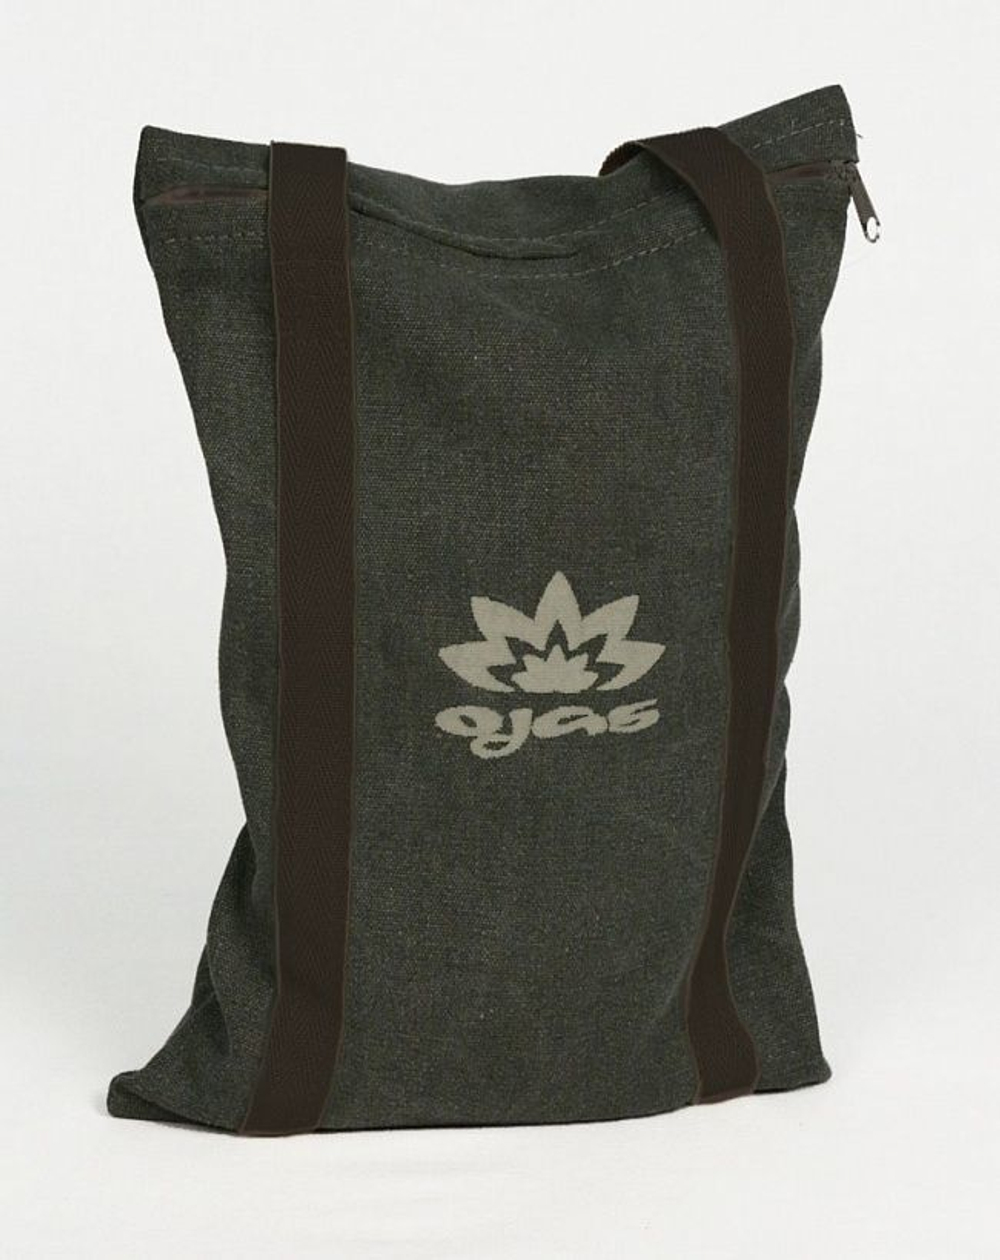 Мешок с песком для занятий йогой Yoga Sandbag 5 кг